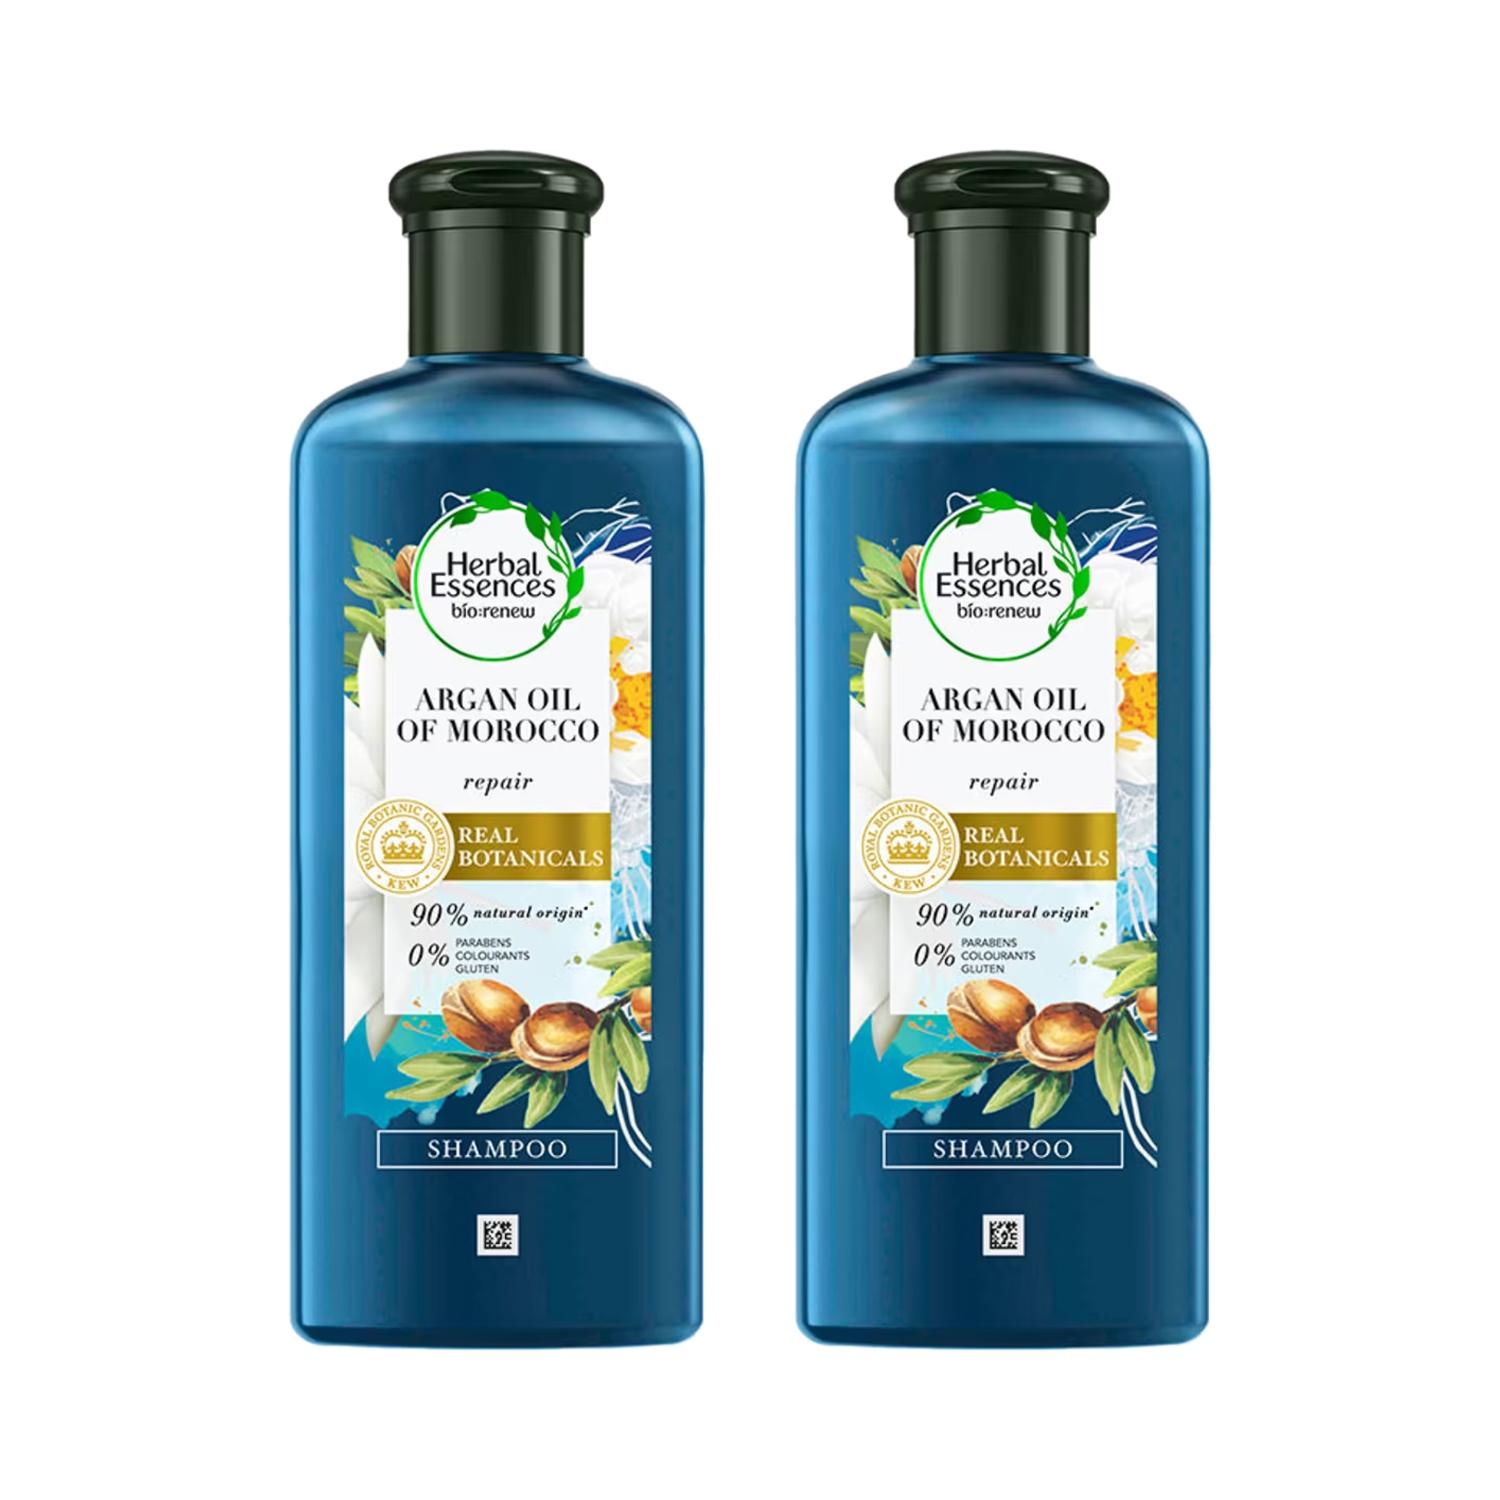 Herbal Essences | Herbal Essences Argan Oil Of Morocco Repair Real Botanicals Shampoo (240 ml) (Pack of 2)